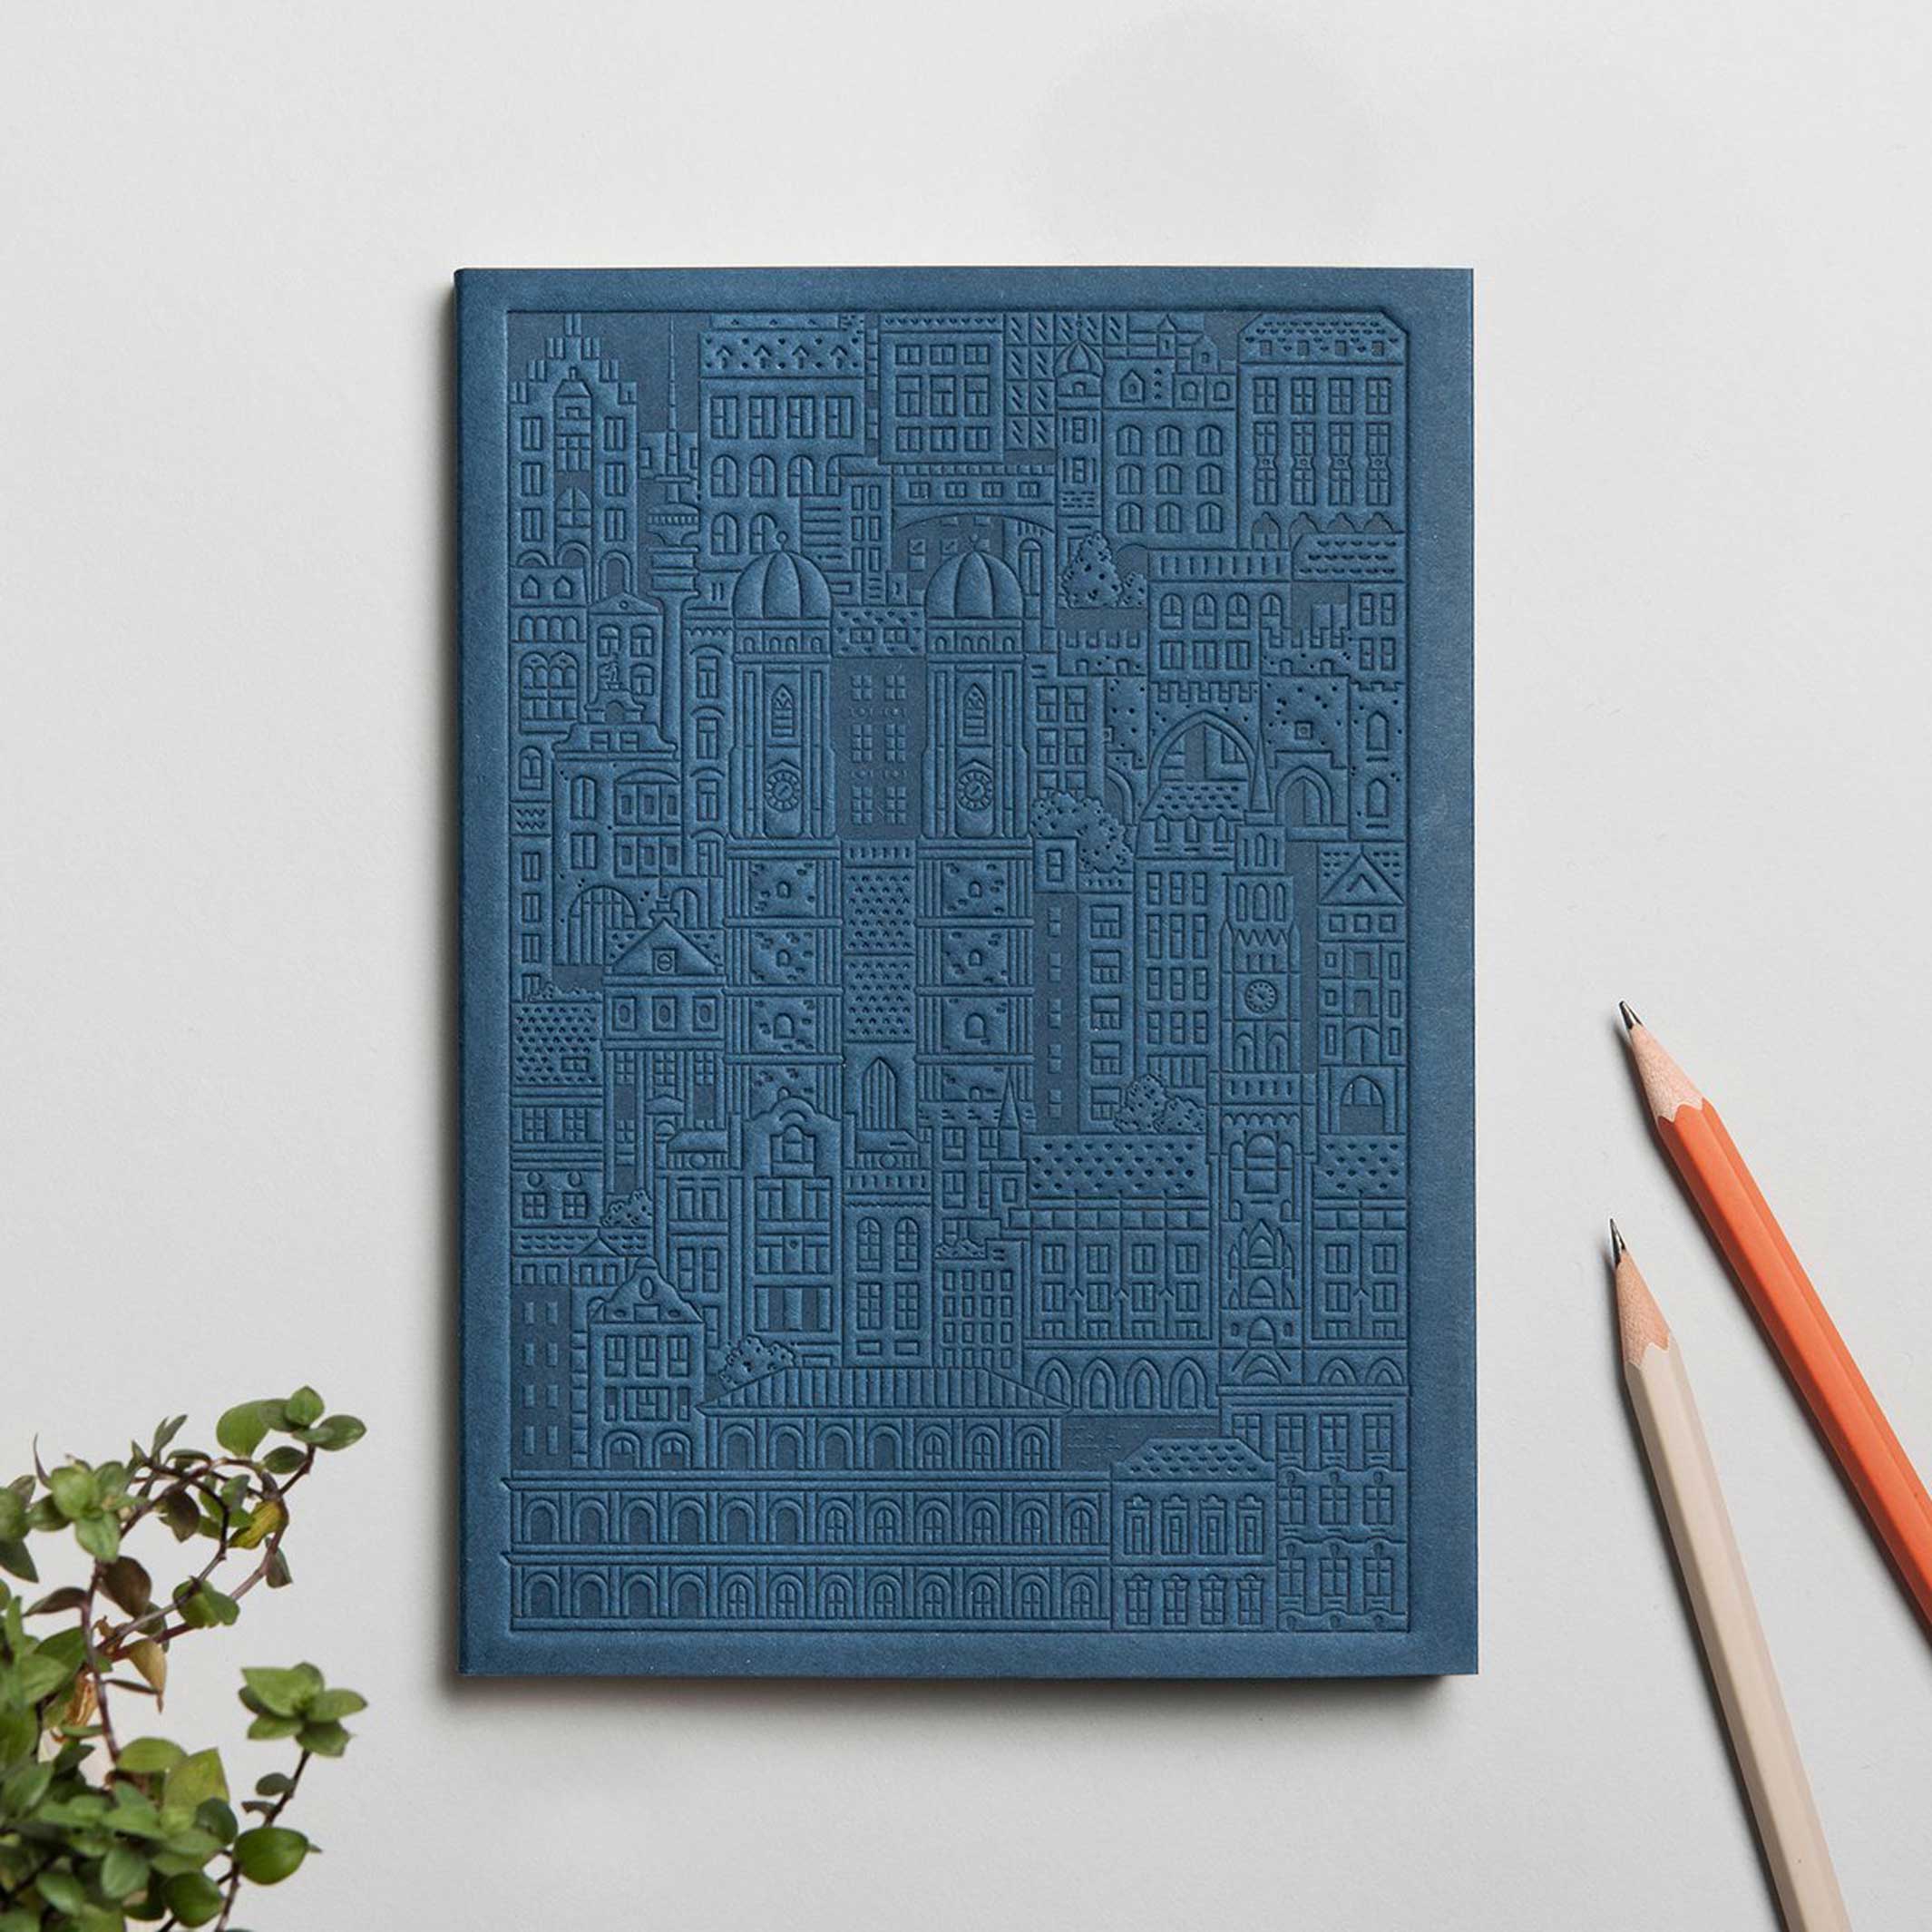 MÜNCHEN NOTEBOOK | blaues NOTIZBUCH | 18x13 cm & 128 Seiten | the city works